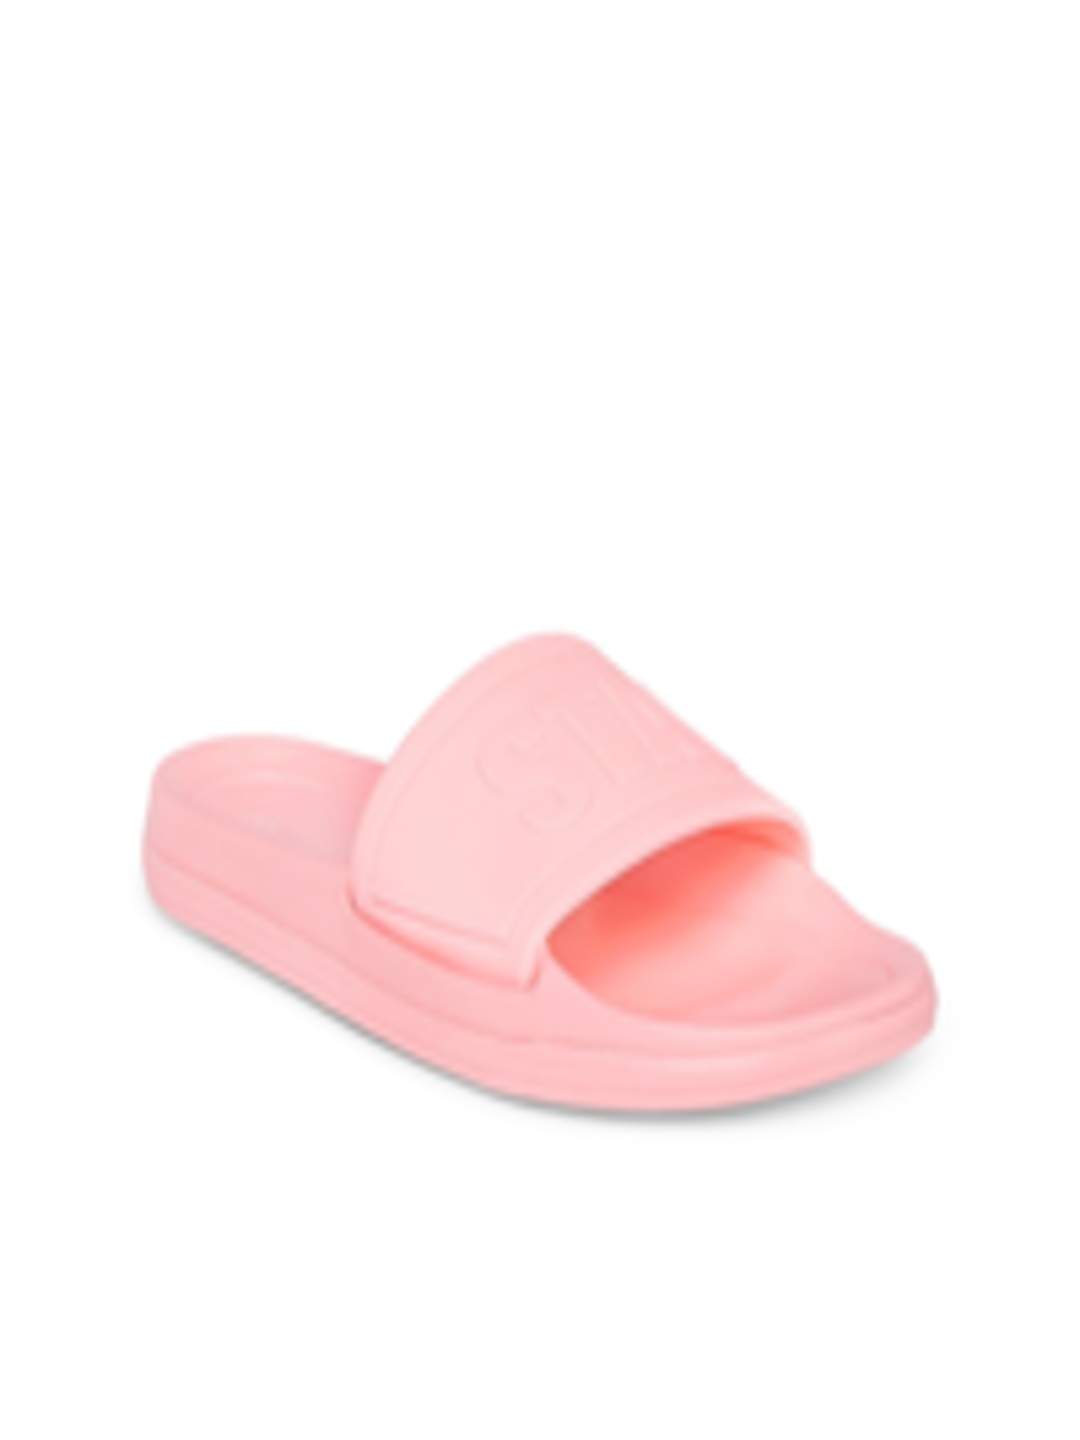 Buy Forever Glam By Pantaloons Women Pink Sliders - Flip Flops for ...